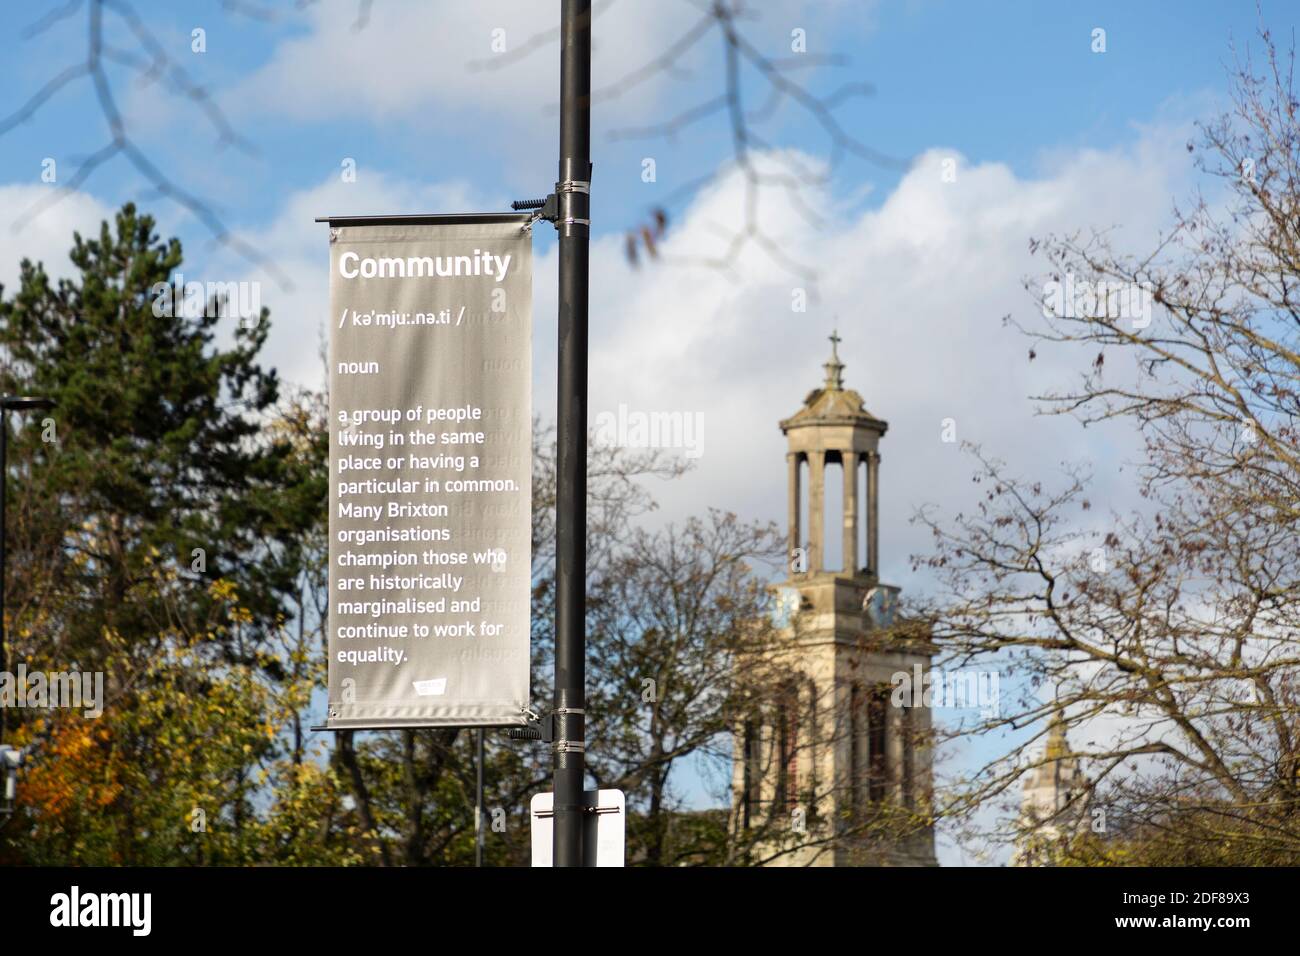 Un panneau présentant une définition de «communauté» installé pour la campagne DE bannière DE L'OFFRE de lampadaire, chemin EFFRA, Brixton, Londres Banque D'Images